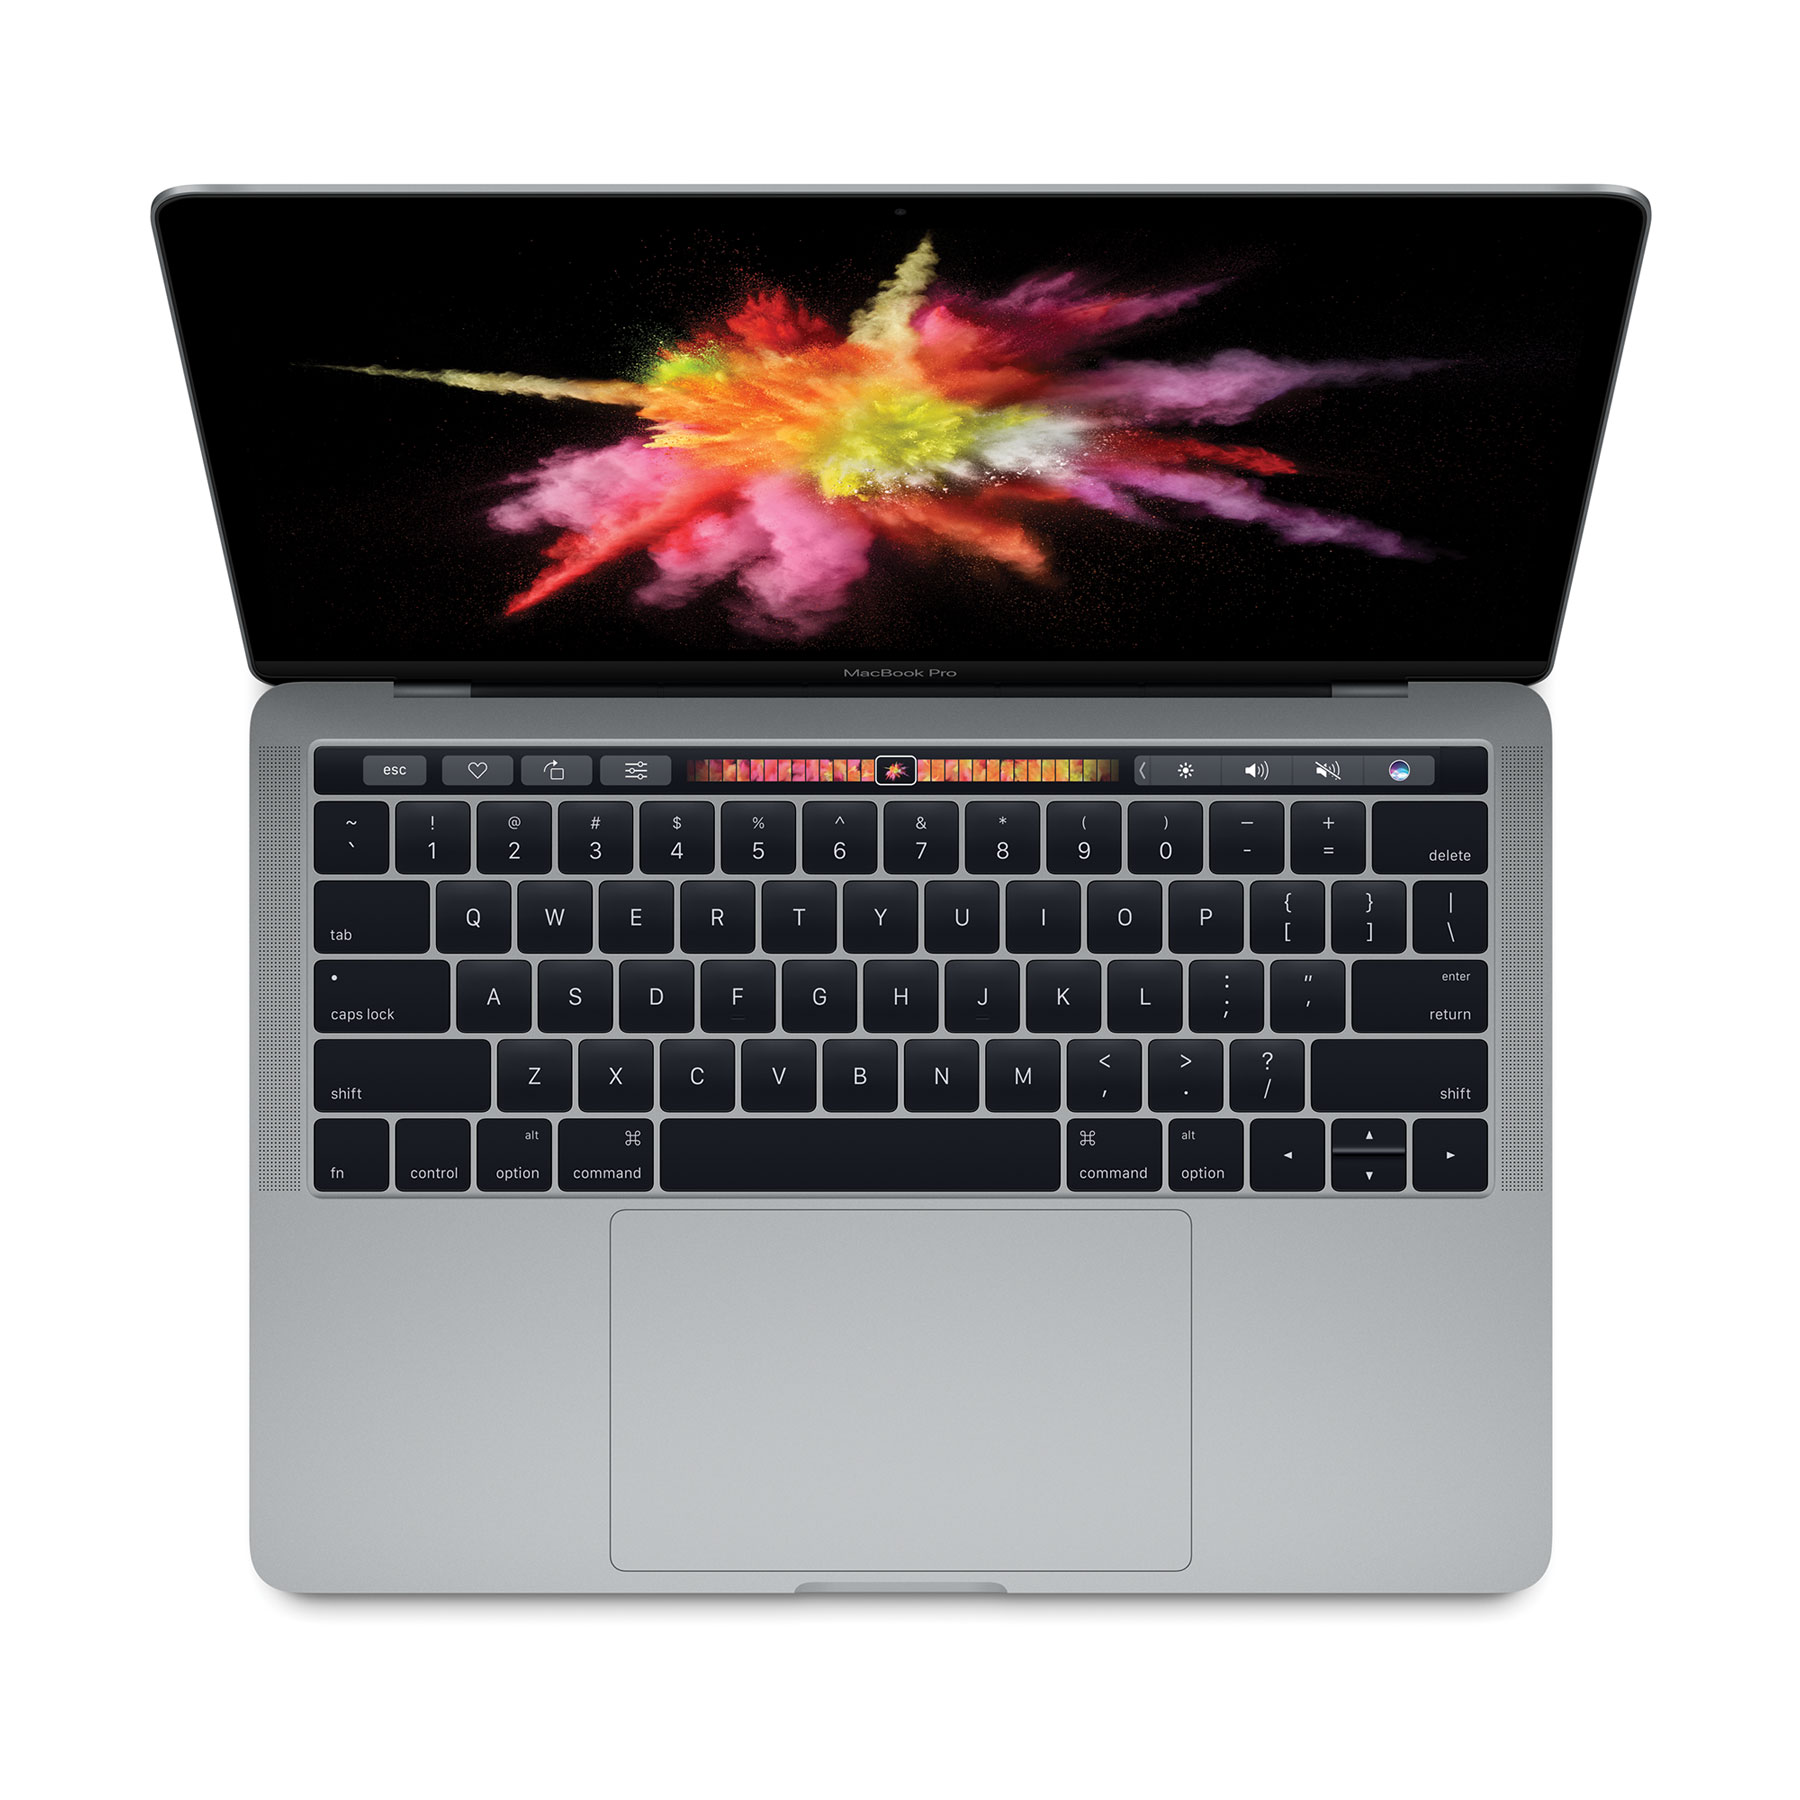 Apple macbook pro prices australia ikmultimedia com